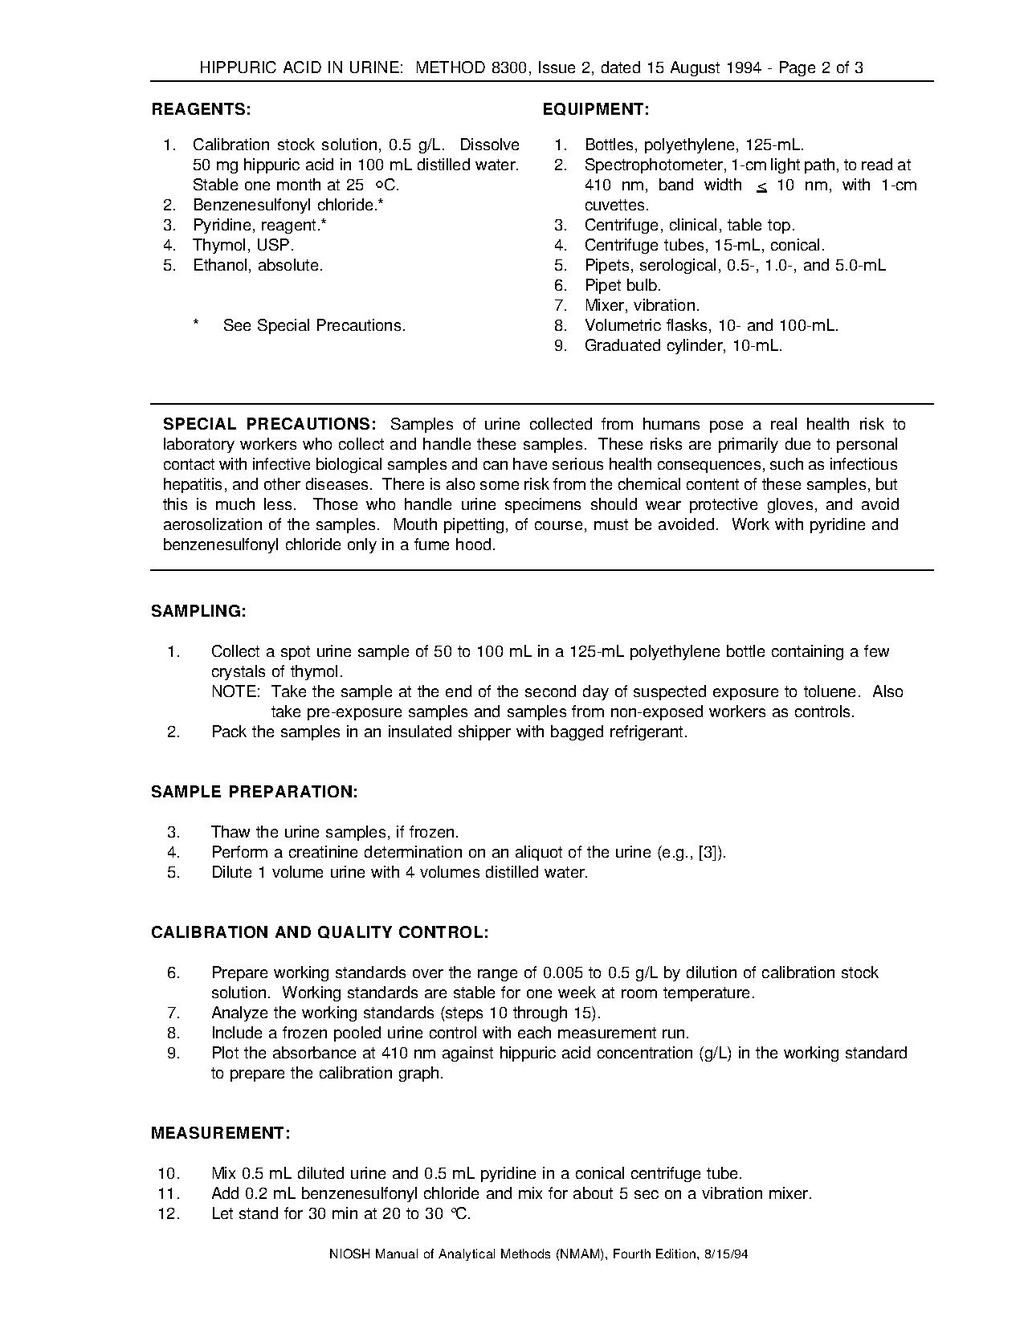 2003 mitsubishi outlander repair manual pdf